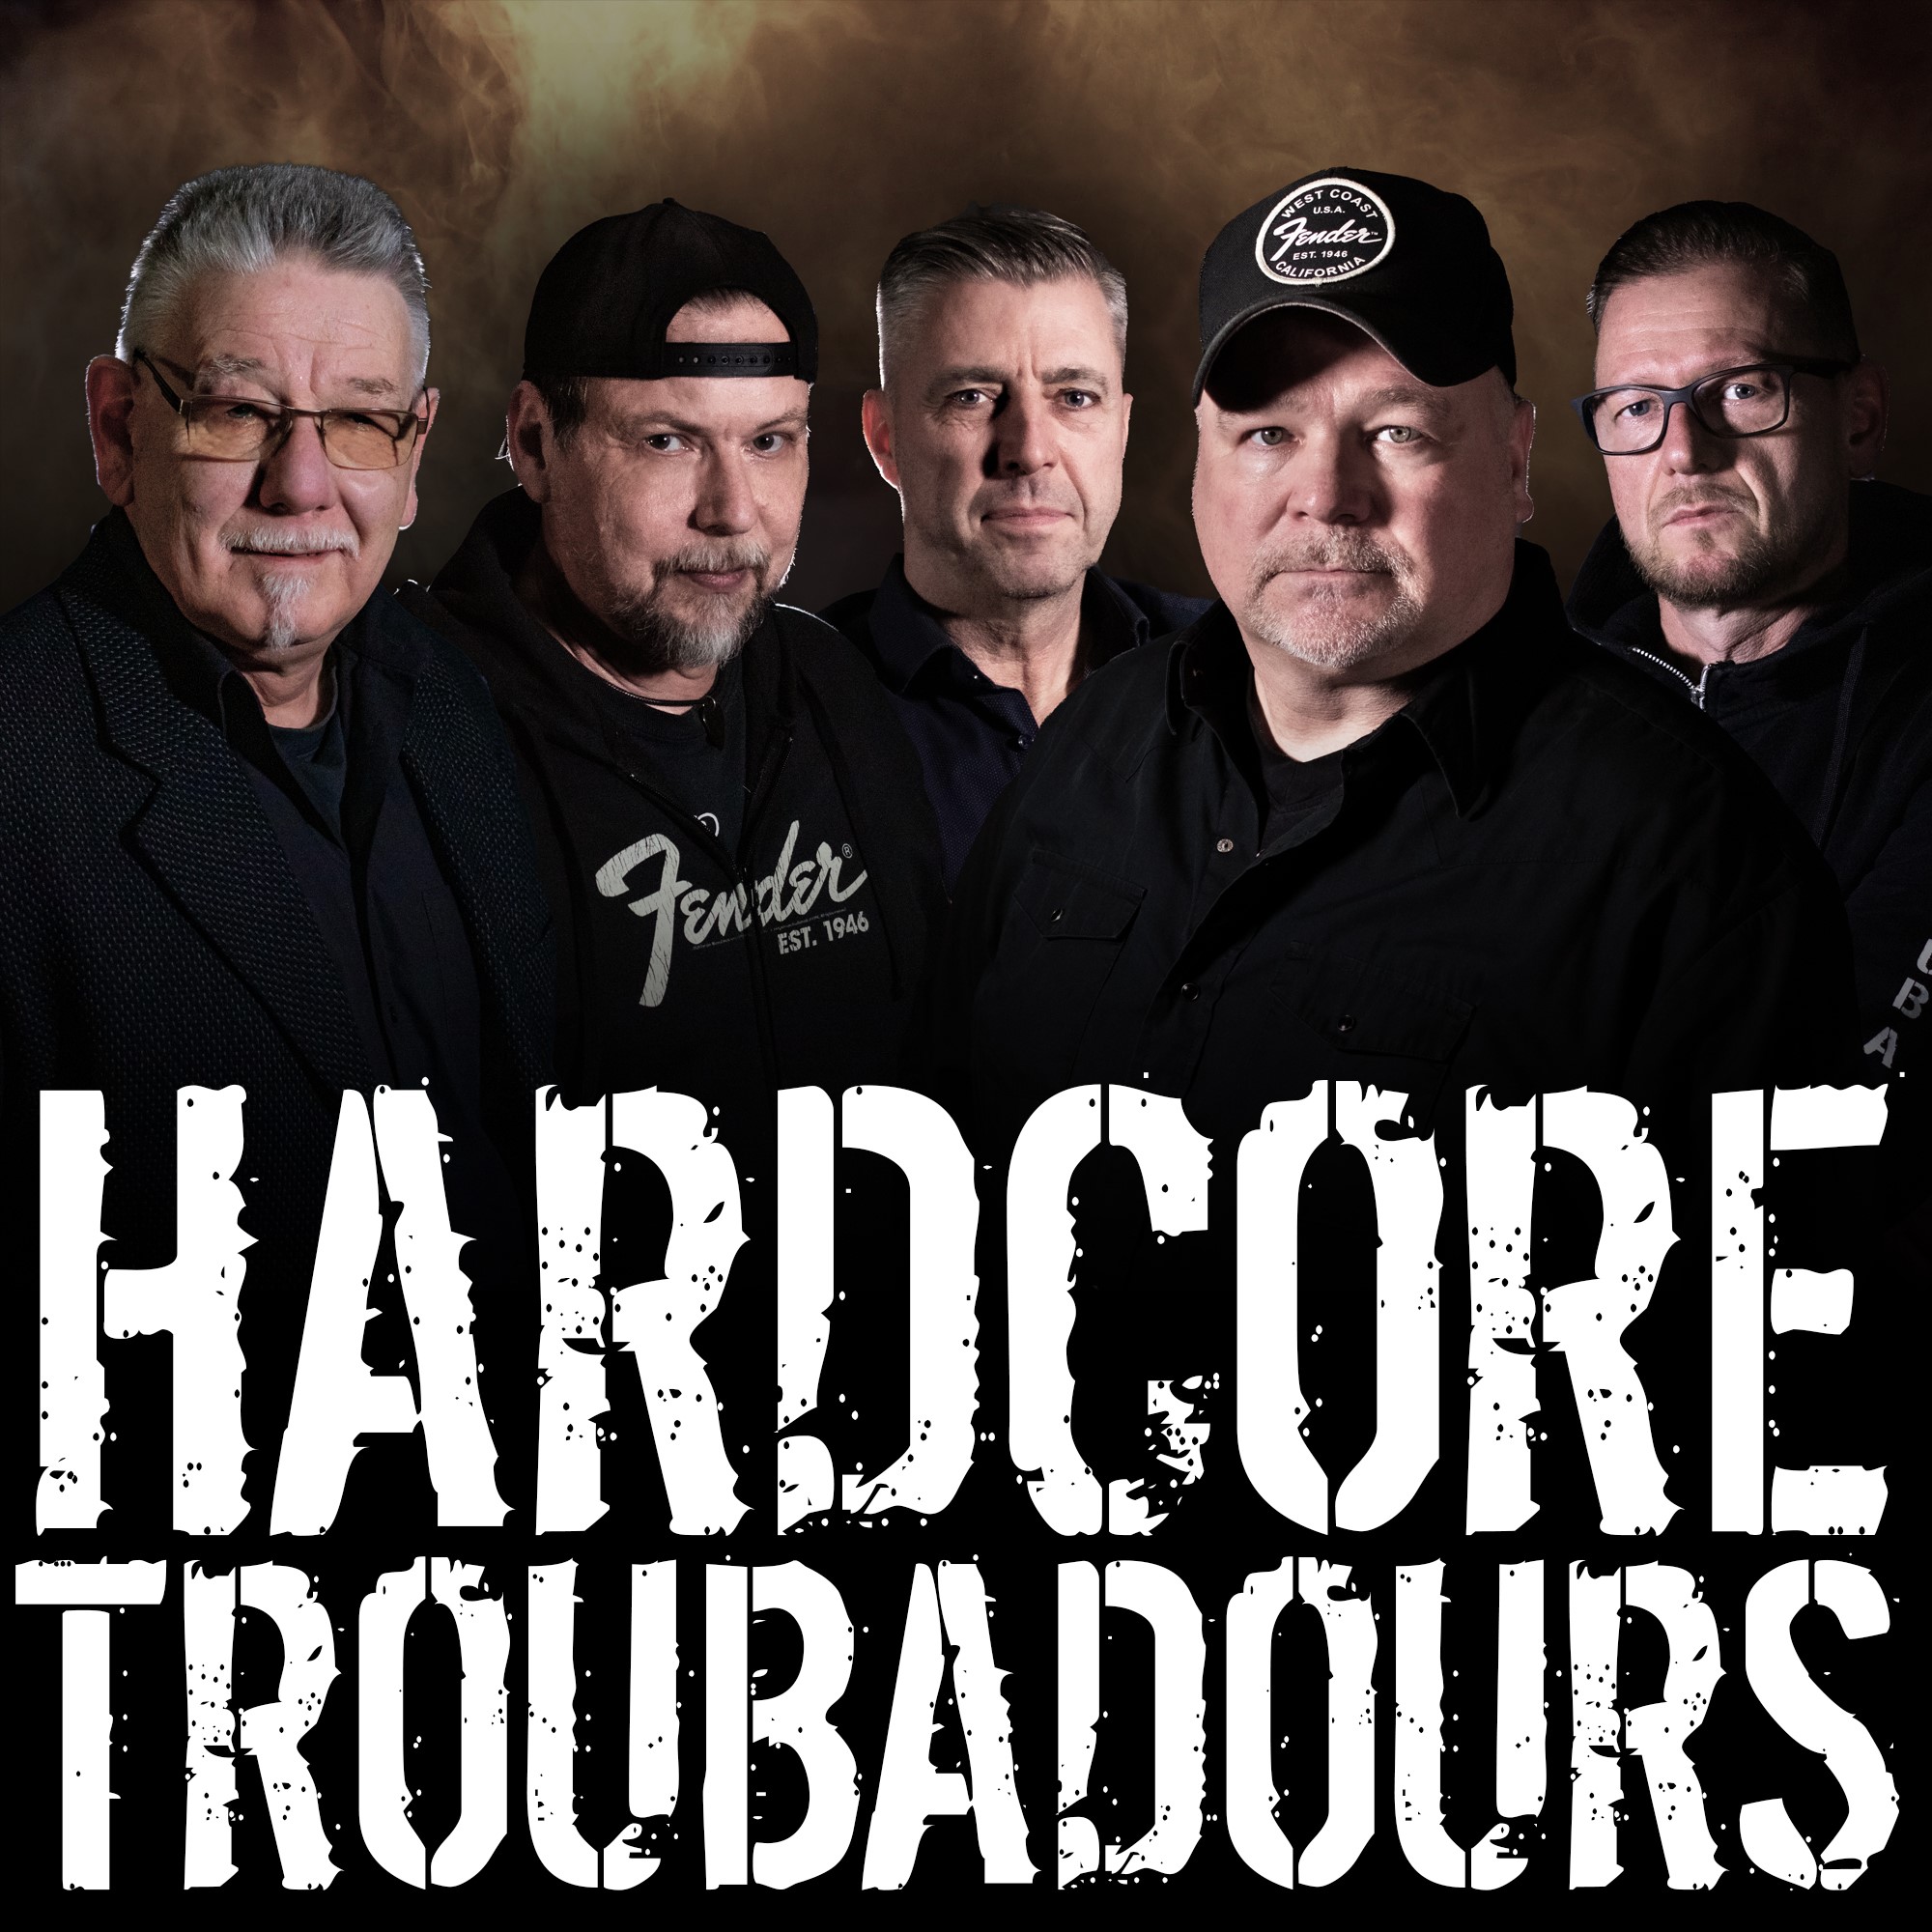 Hardcore Troubadours